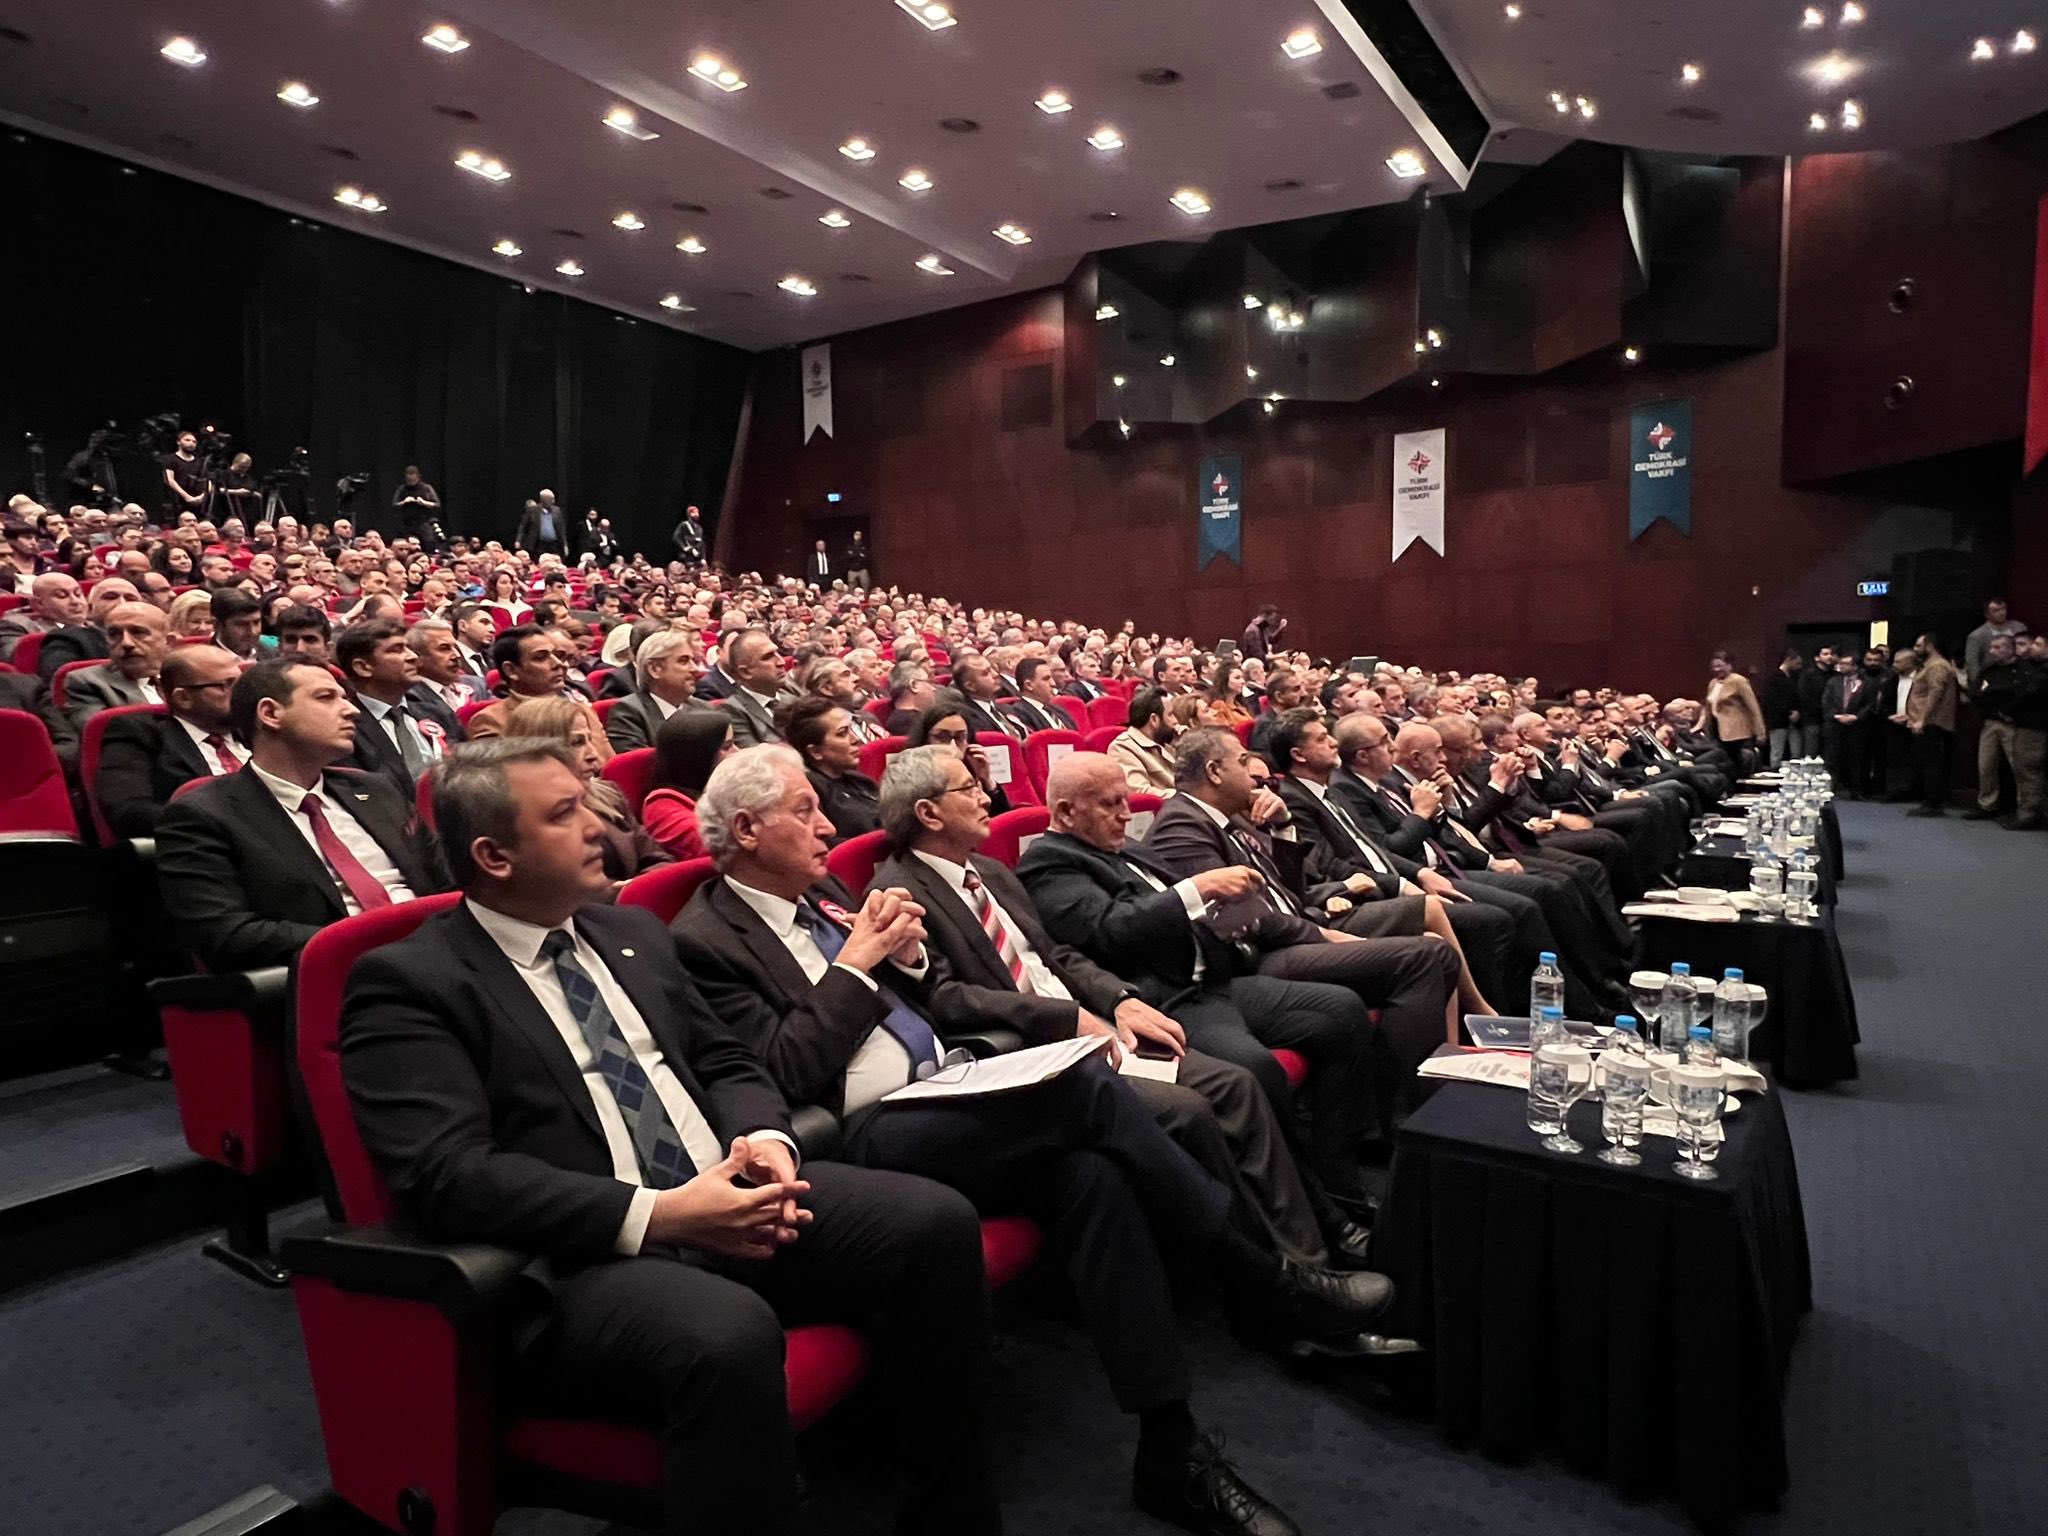 Genel Başkanımız Ahmet Davutoğlu, İl Başkanımız İsa Mesih Şahin ve teşkilat mensuplarımız ile birlikte, Türk Demokrasi Vakfı’nın düzenlediği Demokrasi Şurası’na katıldı.